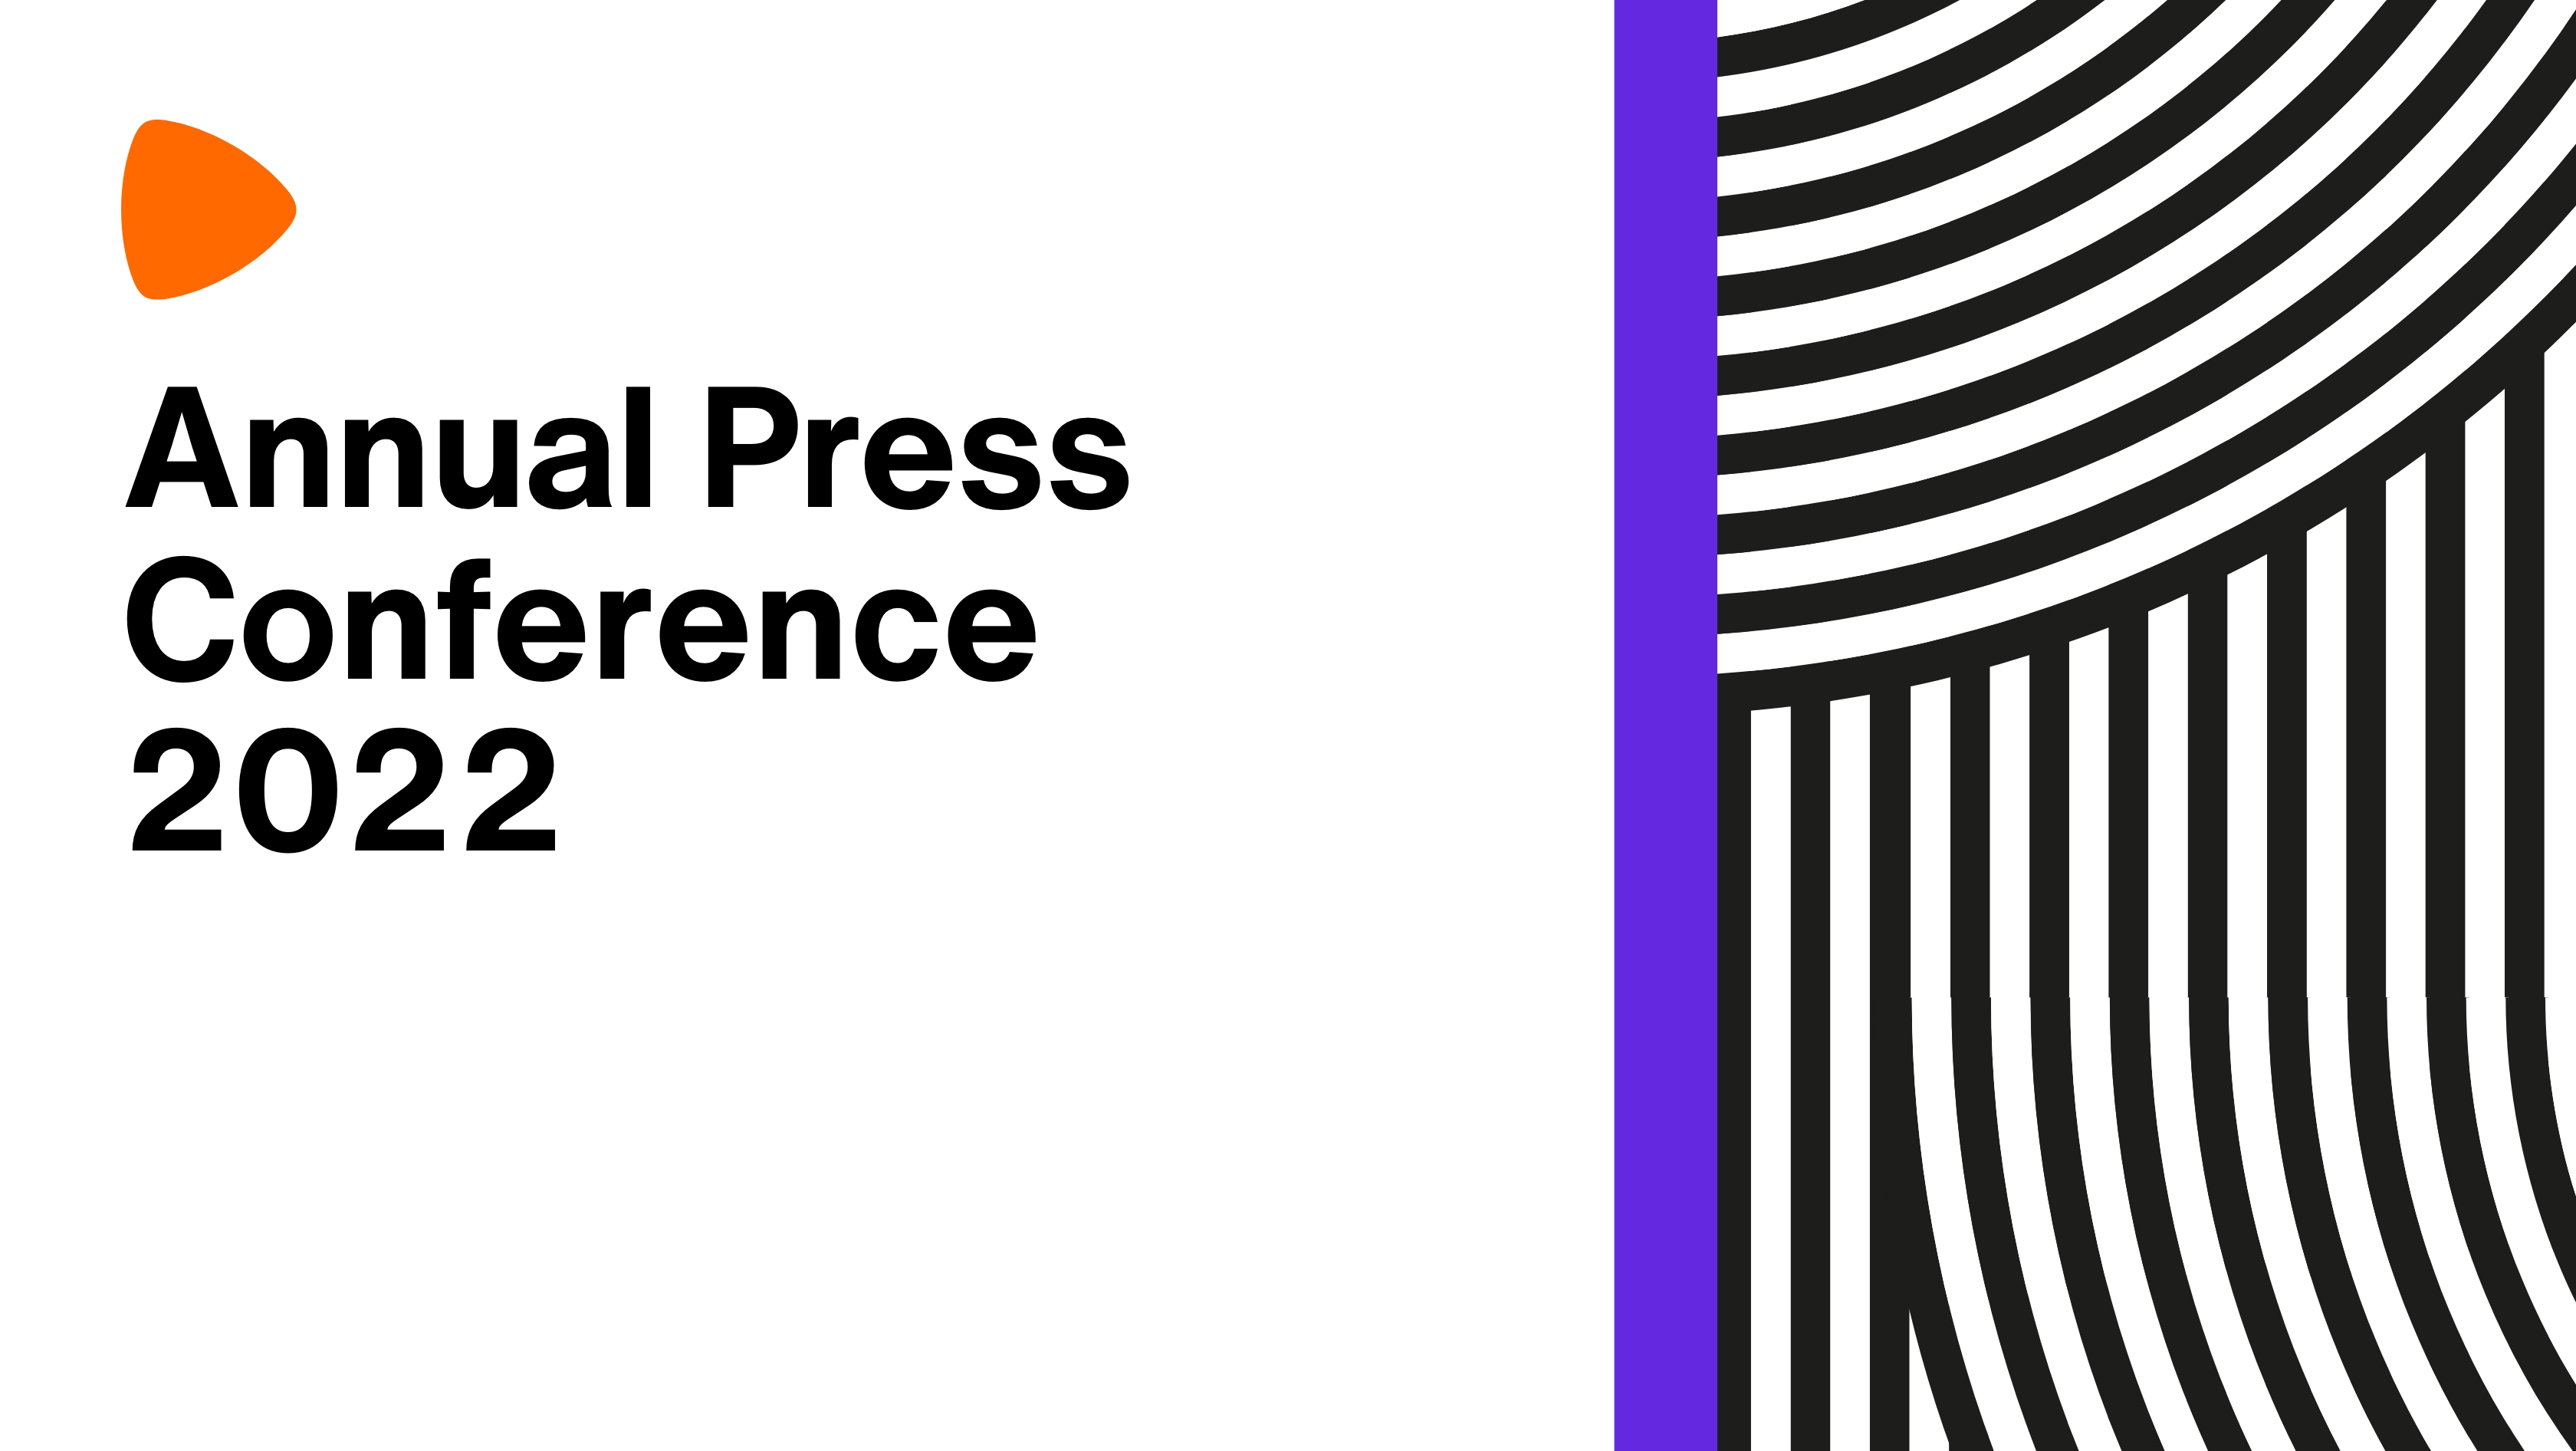 Annual Press Conference 2022